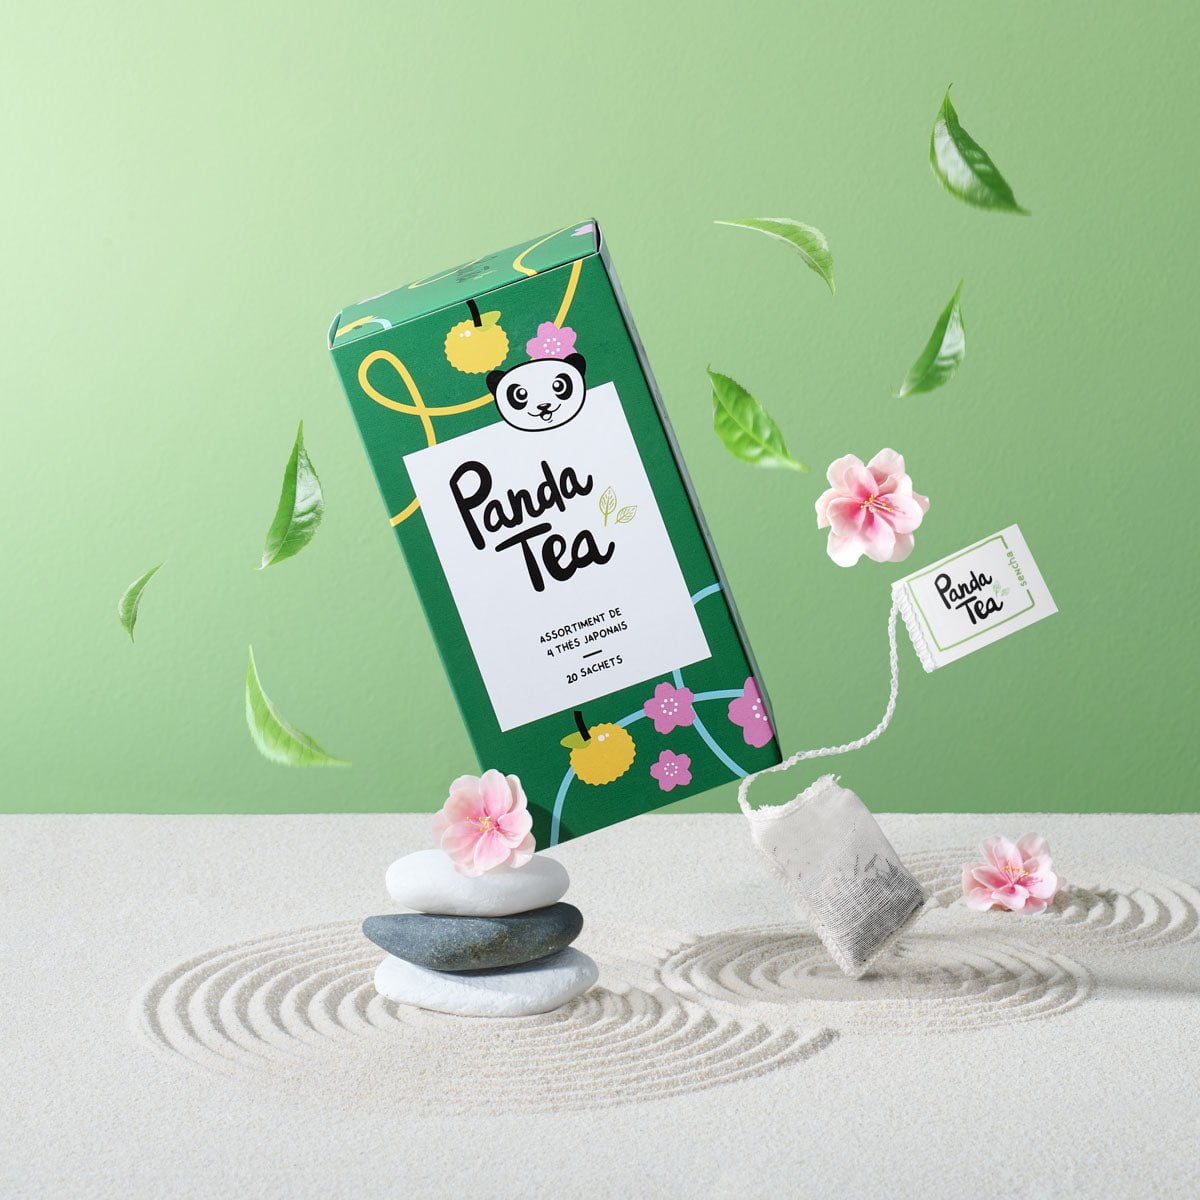 Coffret Thés Japonais - 4 thés verts d'exception - Panda Tea